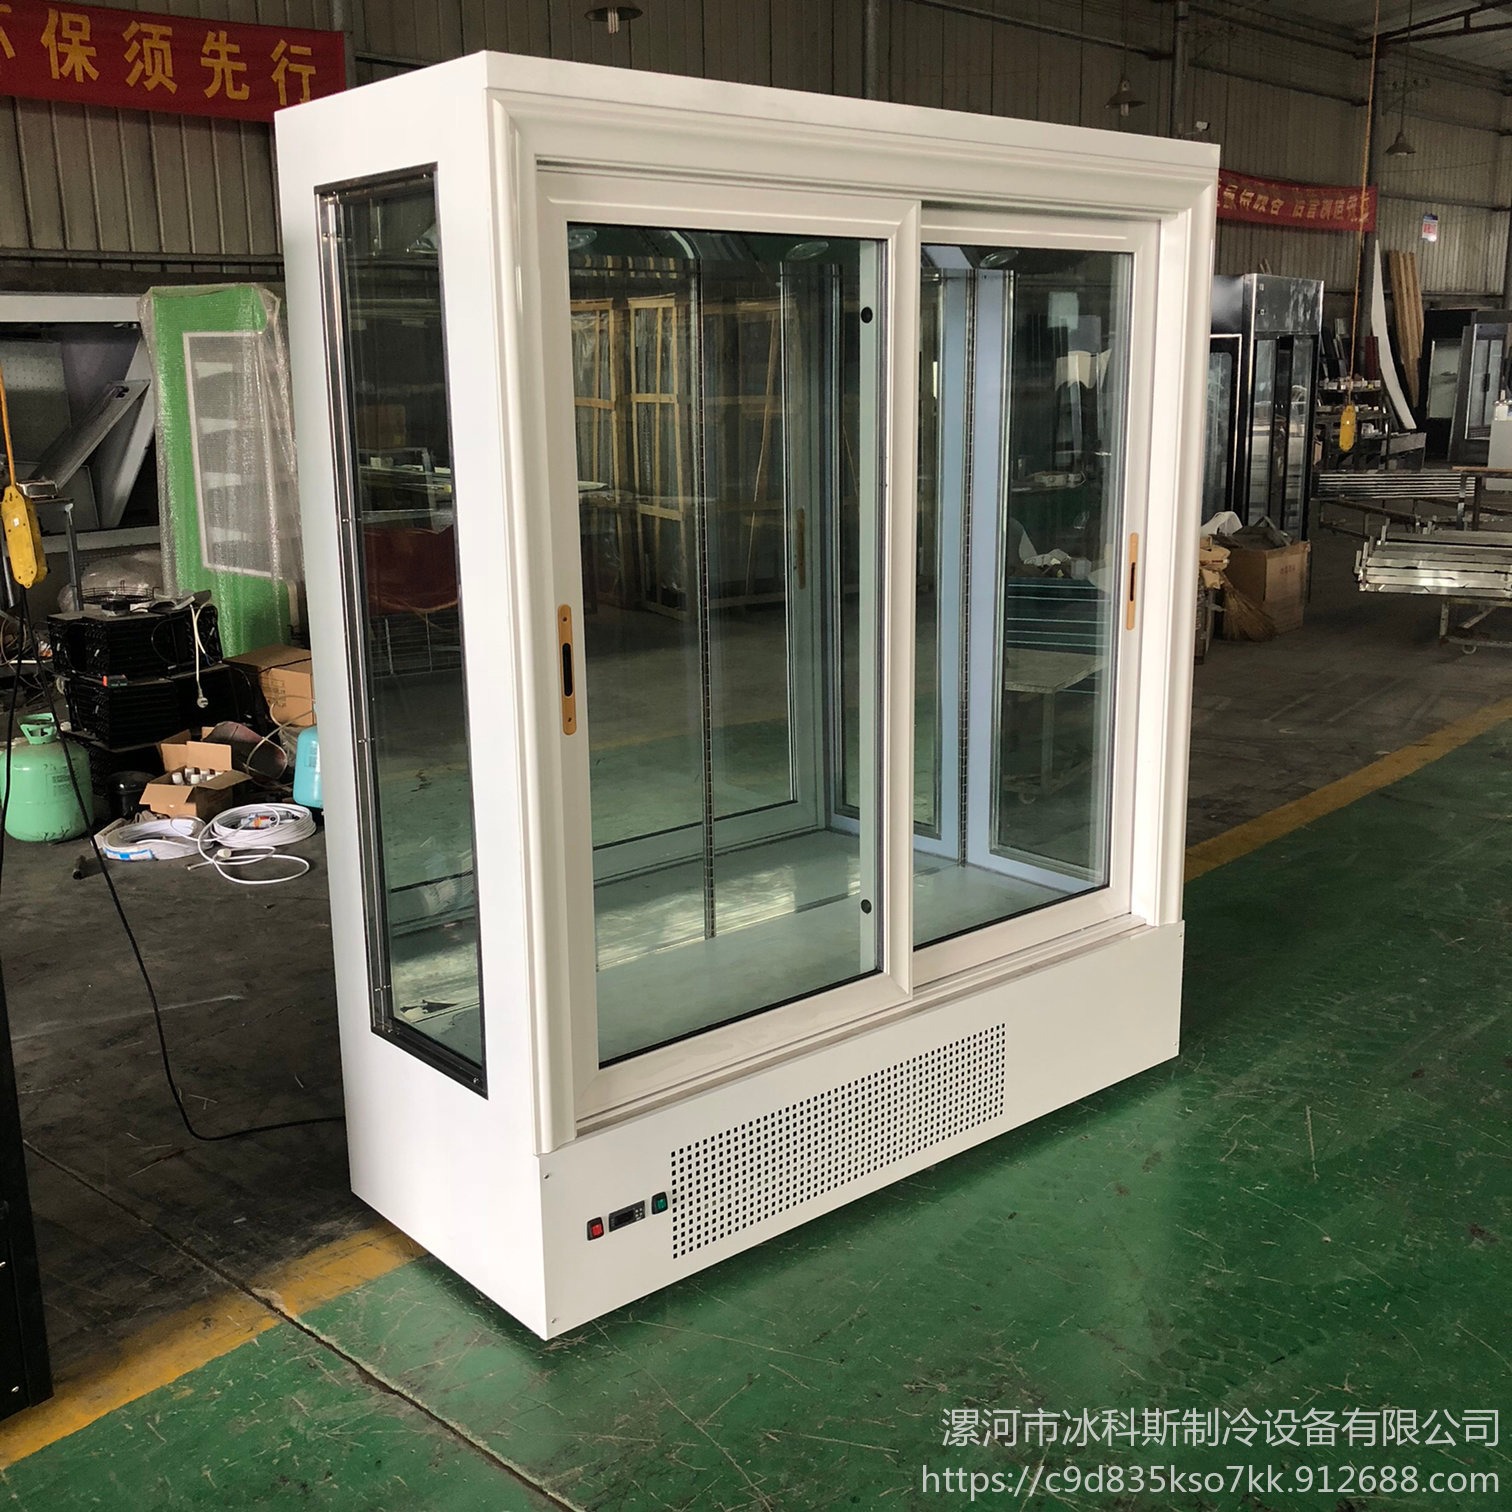 风冷直冷冷藏  立式商用冰箱  两门鲜花柜  冰柜工厂直销未来雪冷柜定制  WLX-XH-142